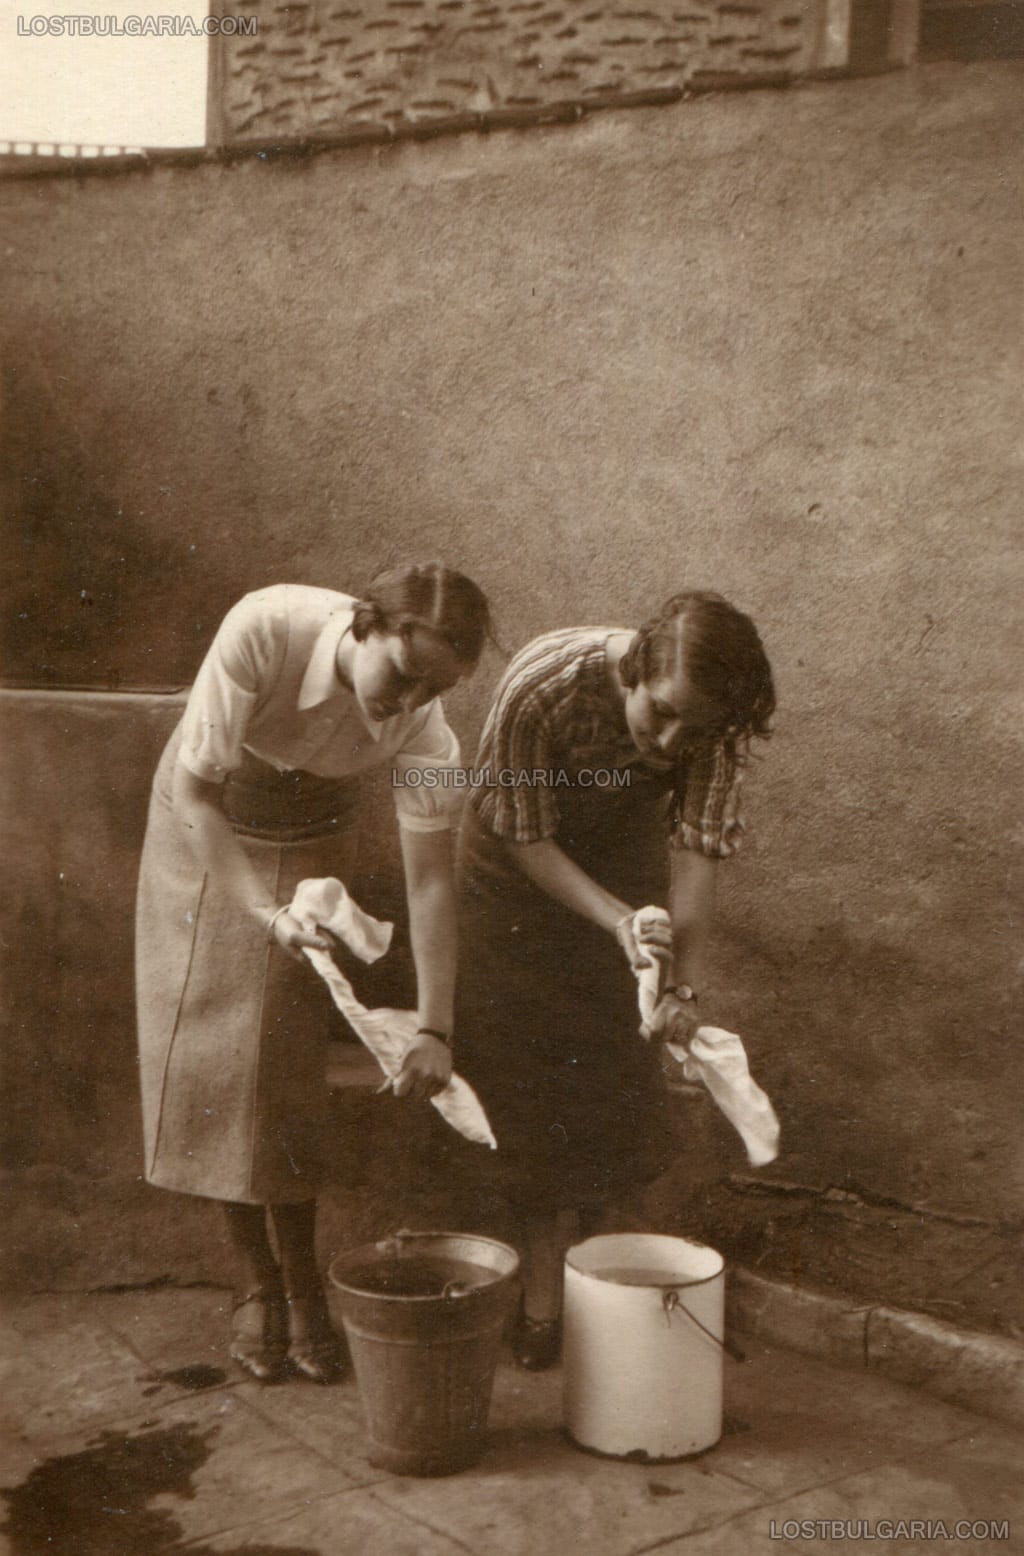 Две млади дами в любителски фото-разказ, пето действие - изстискване на напоените със сълзи кърпи в кофи, София, ул. "Цар Иван Асен II" №6, 1927-8 г.